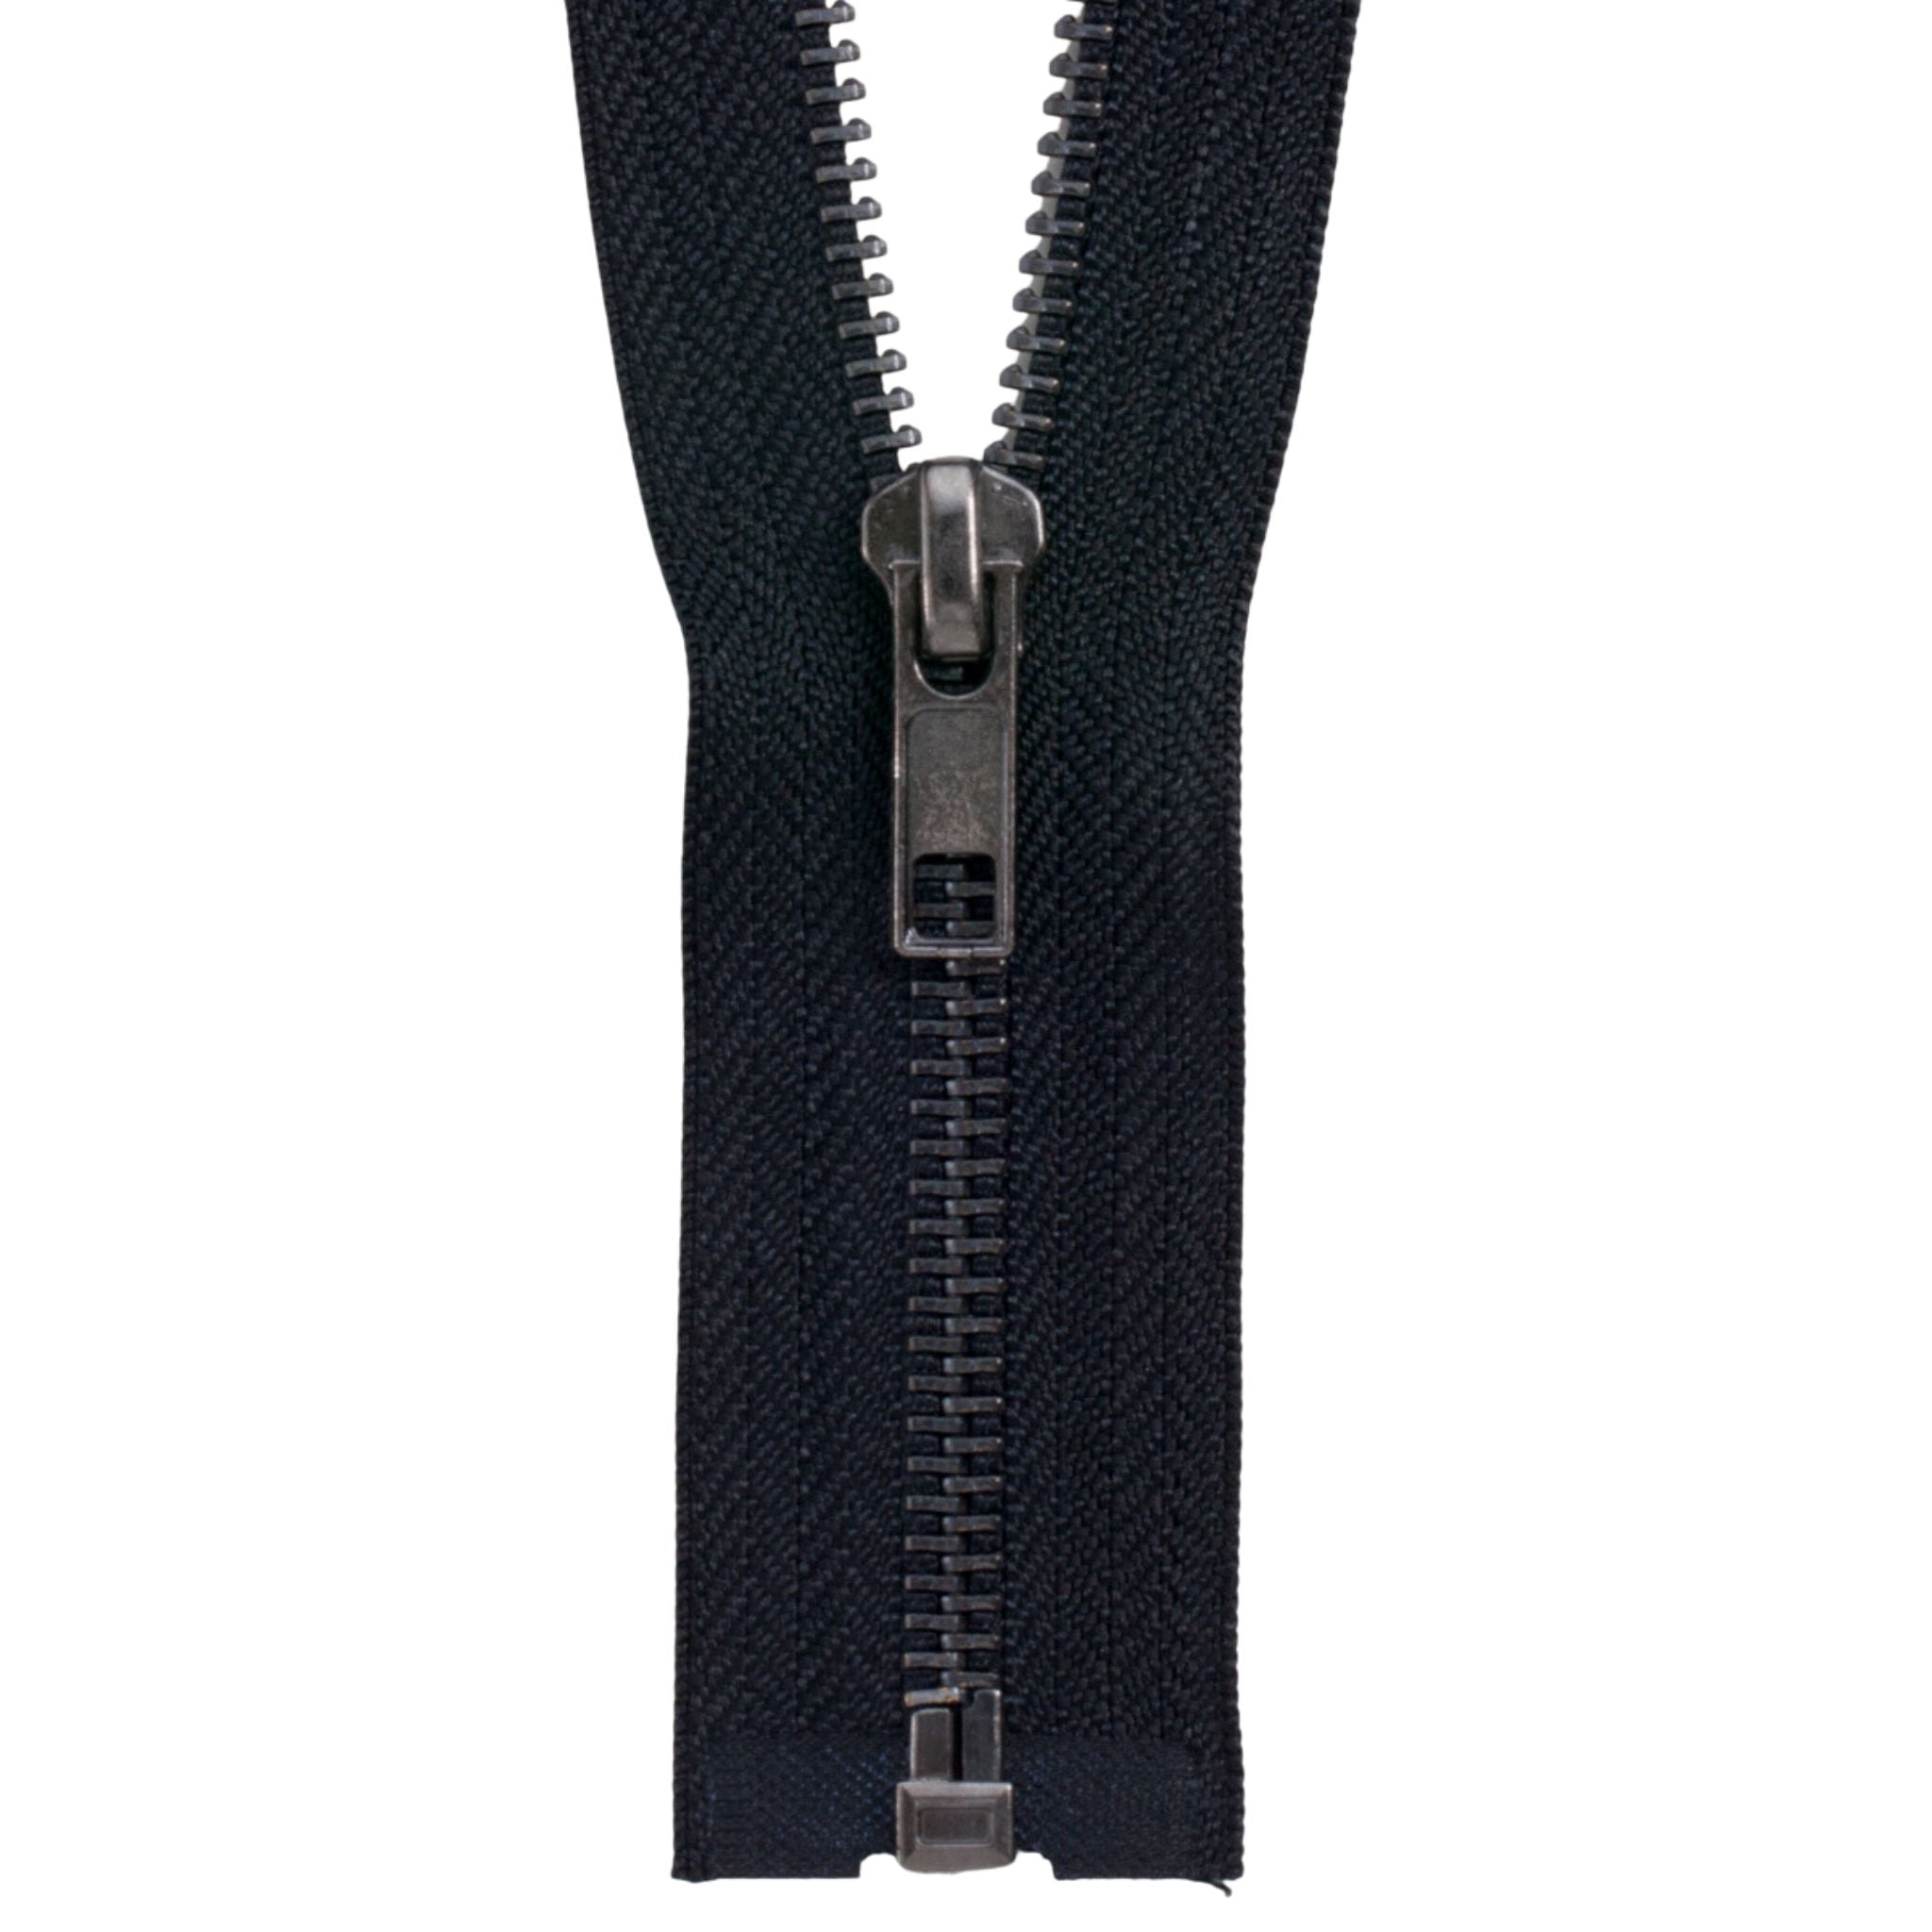 Black #5 Jacket Zipper: 26,36,40-blk.5c.blkauto